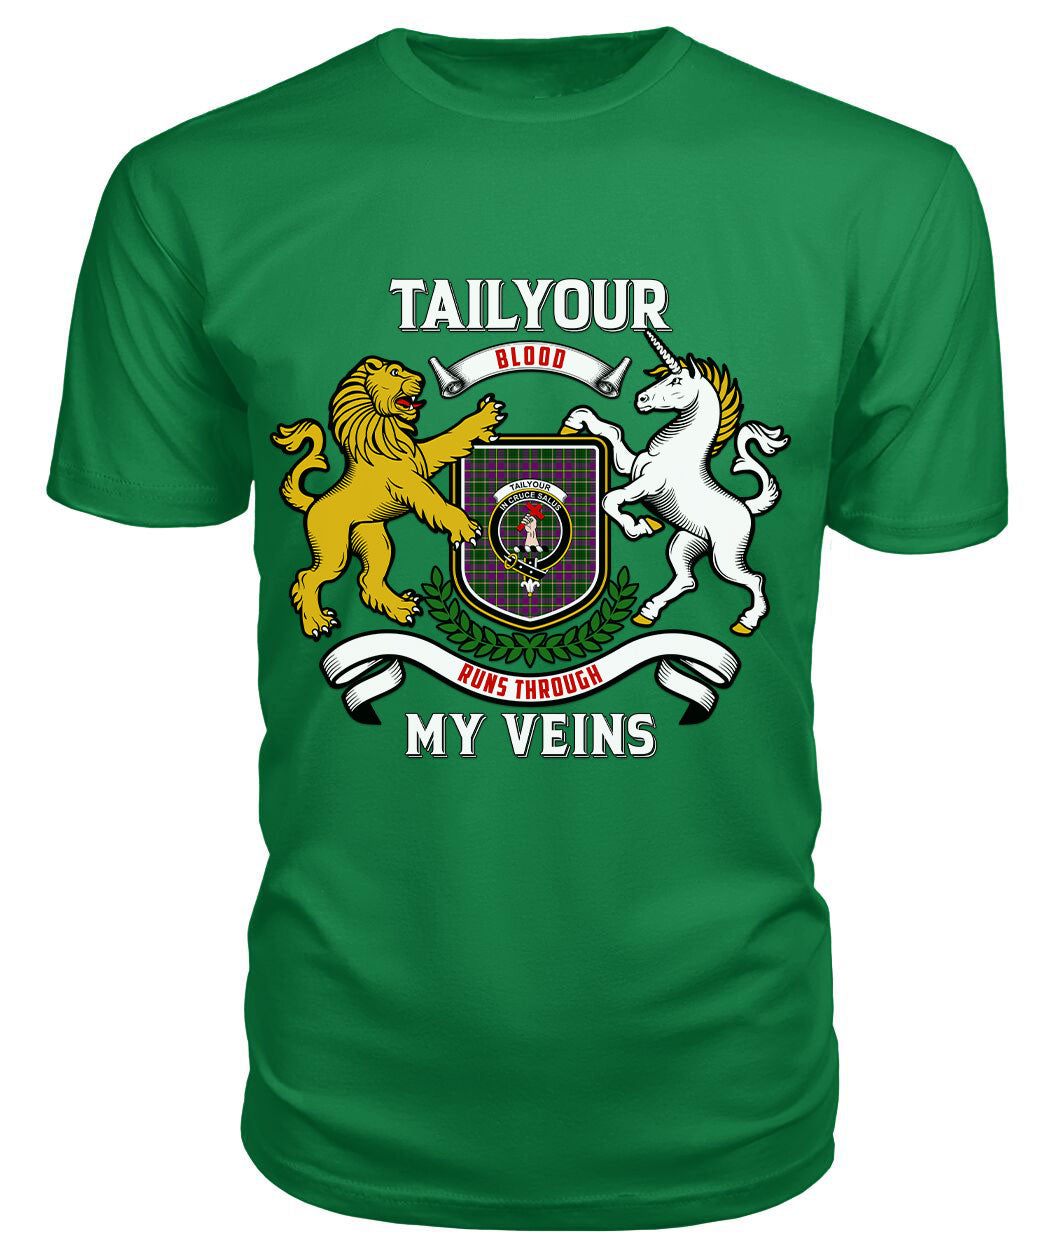 Tailyour Tartan Crest 2D T-shirt - Blood Runs Through My Veins Style